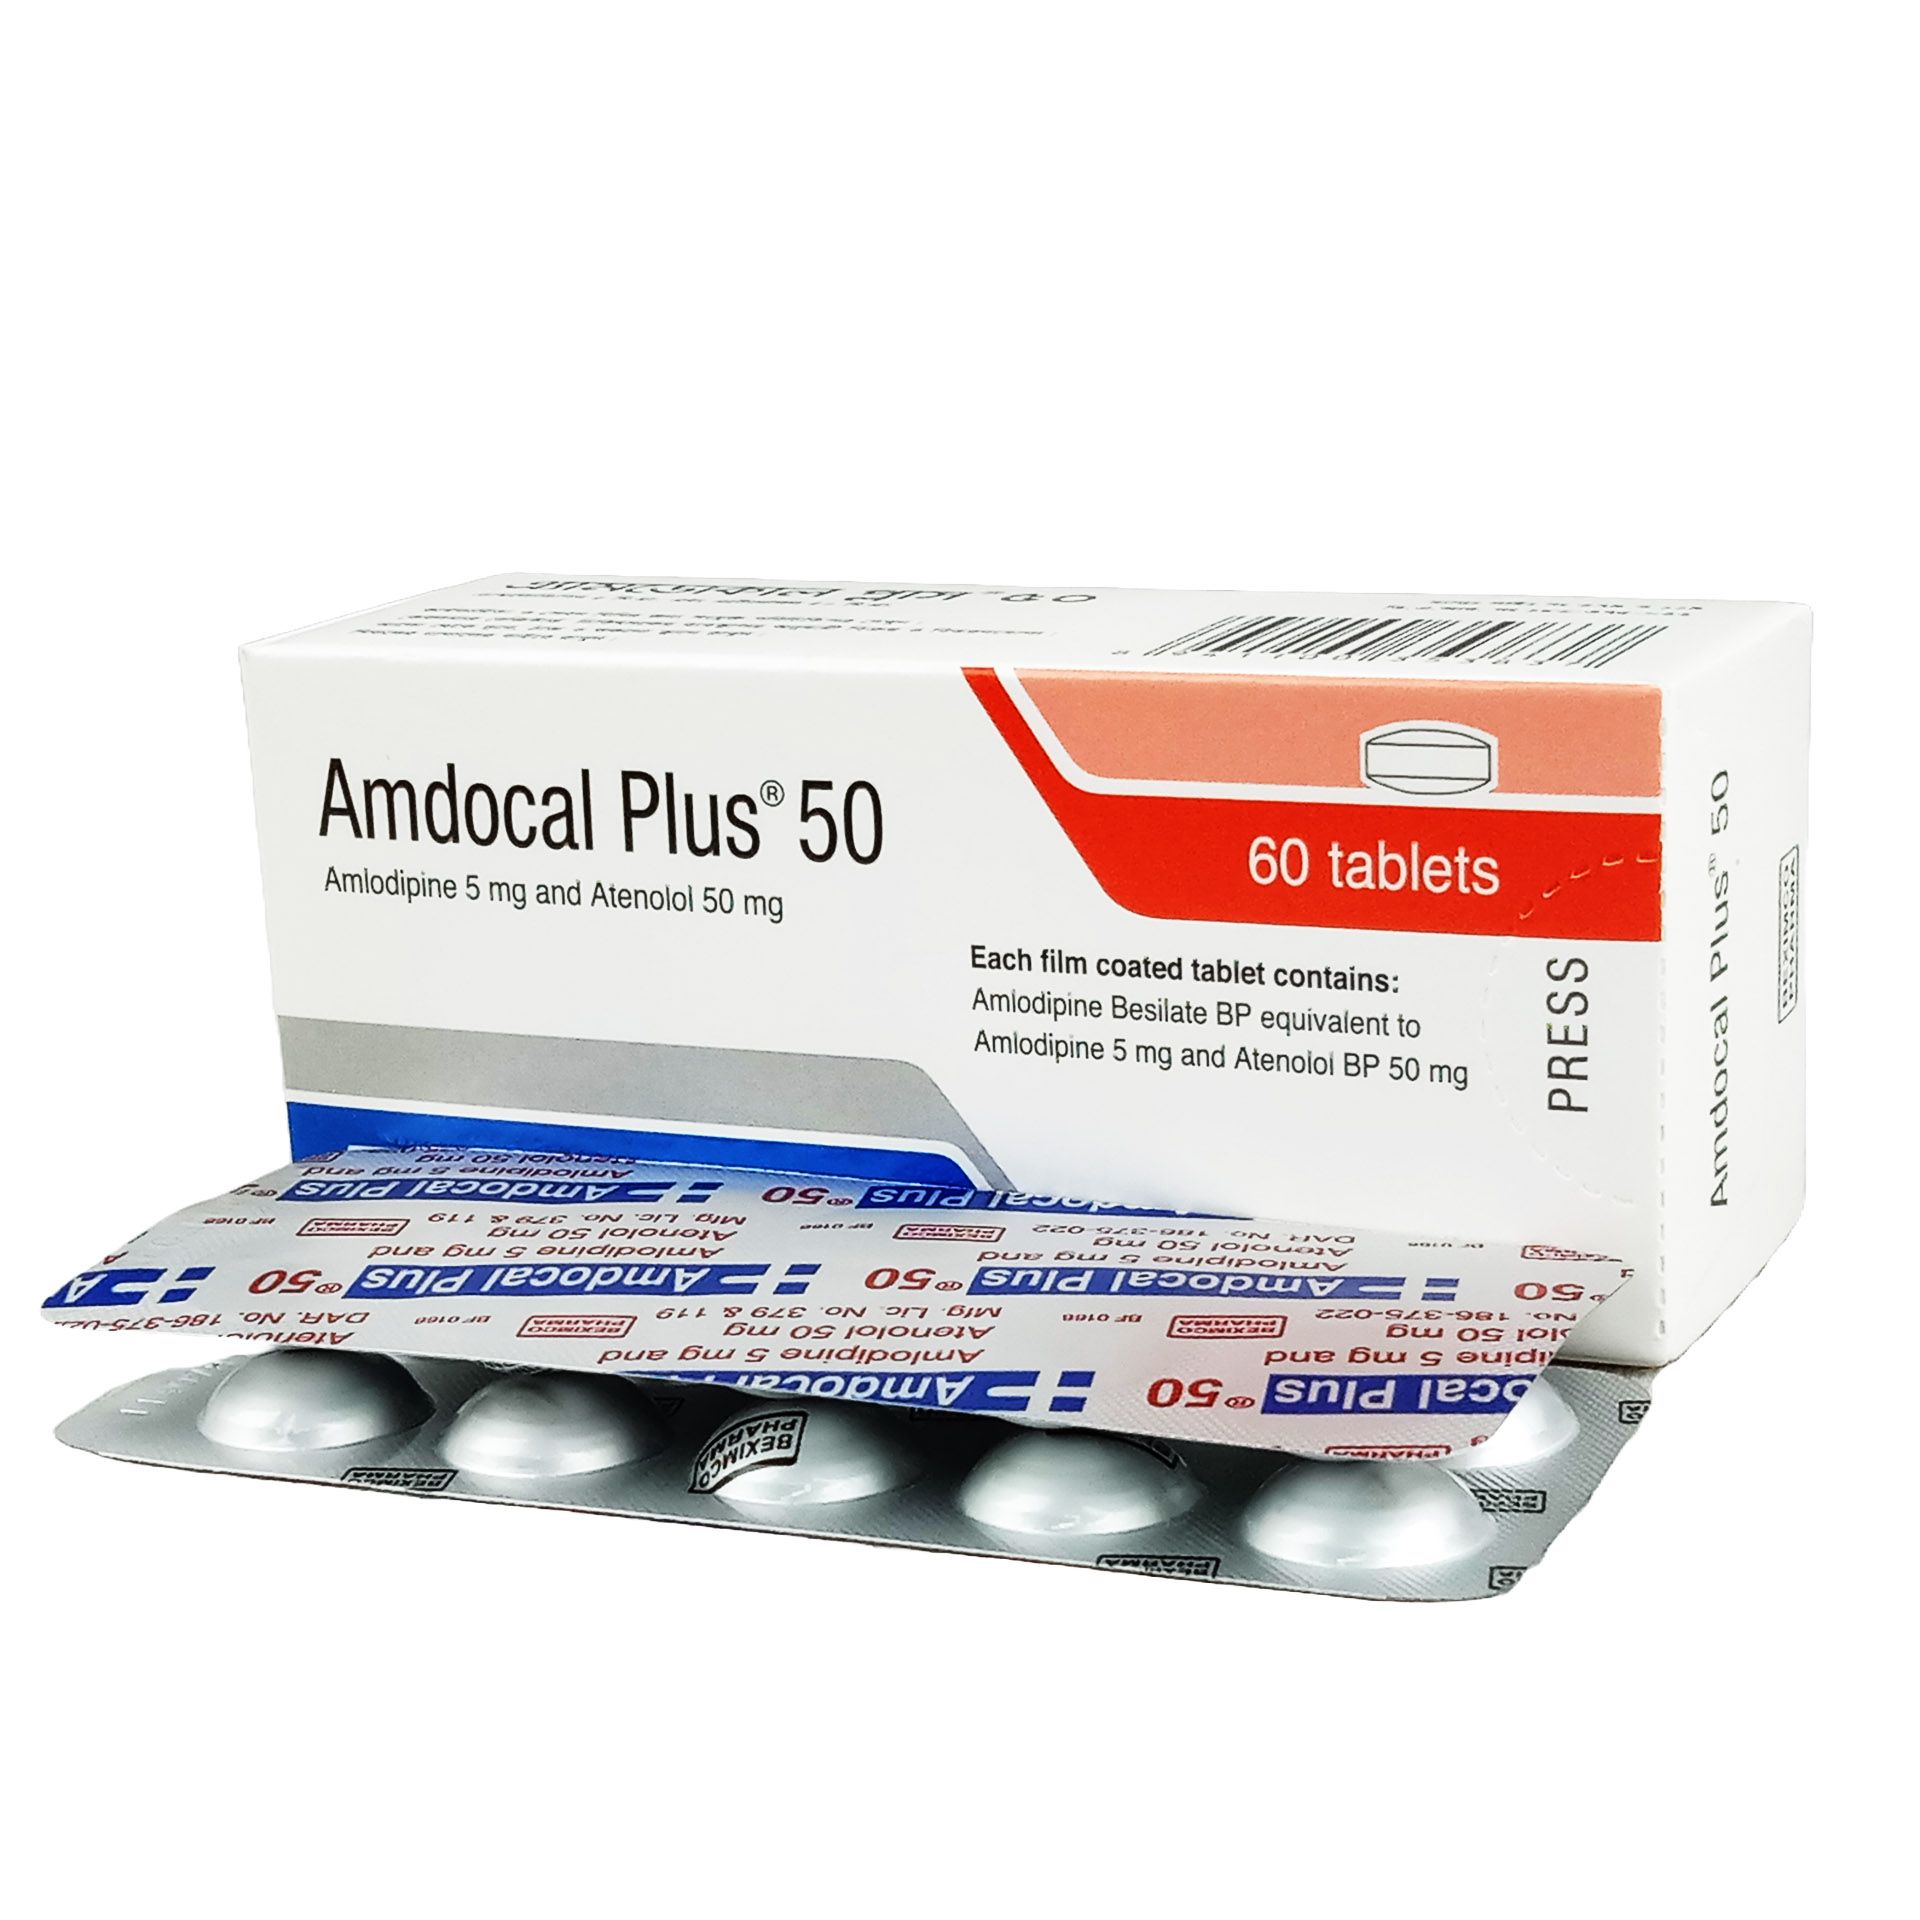 Amdocal Plus 50 5mg+50mg Tablet